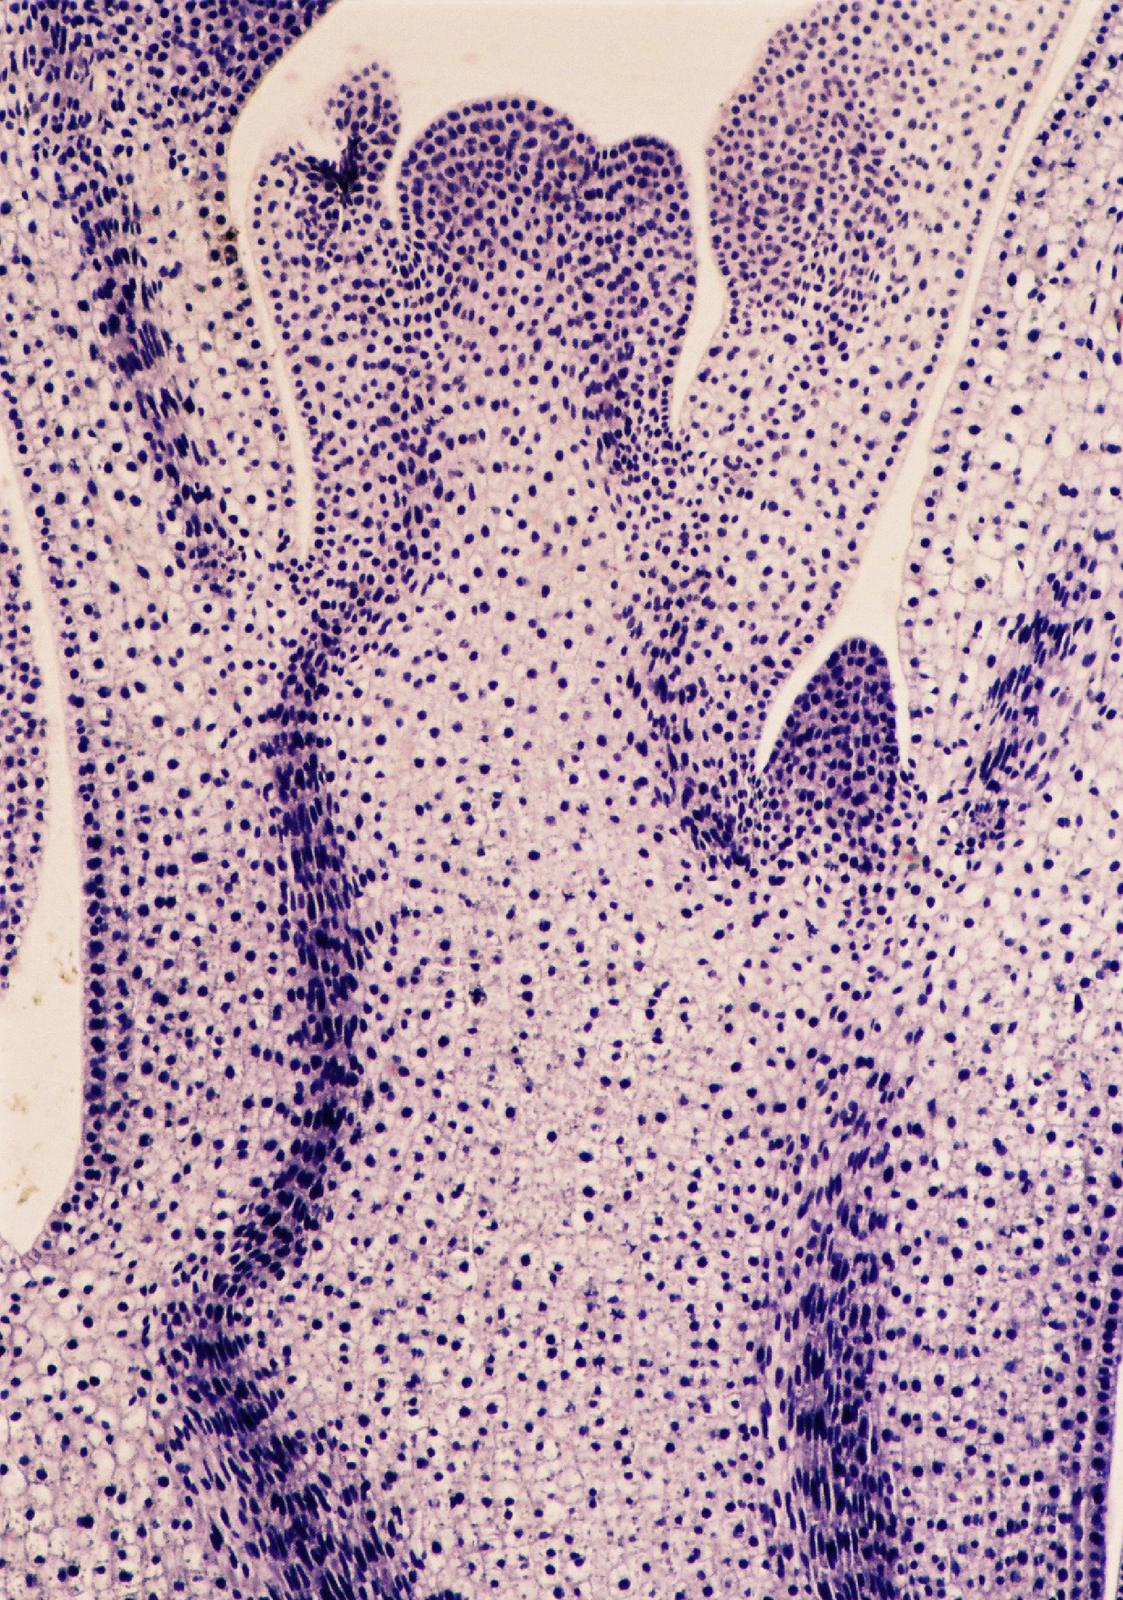 Mikrofotografia przedstawiajaca przekrój podłużny przez stożek wzrostu pędu. Komórki zabrwione na fioletowo, cienkościenne o dużych jądrach.